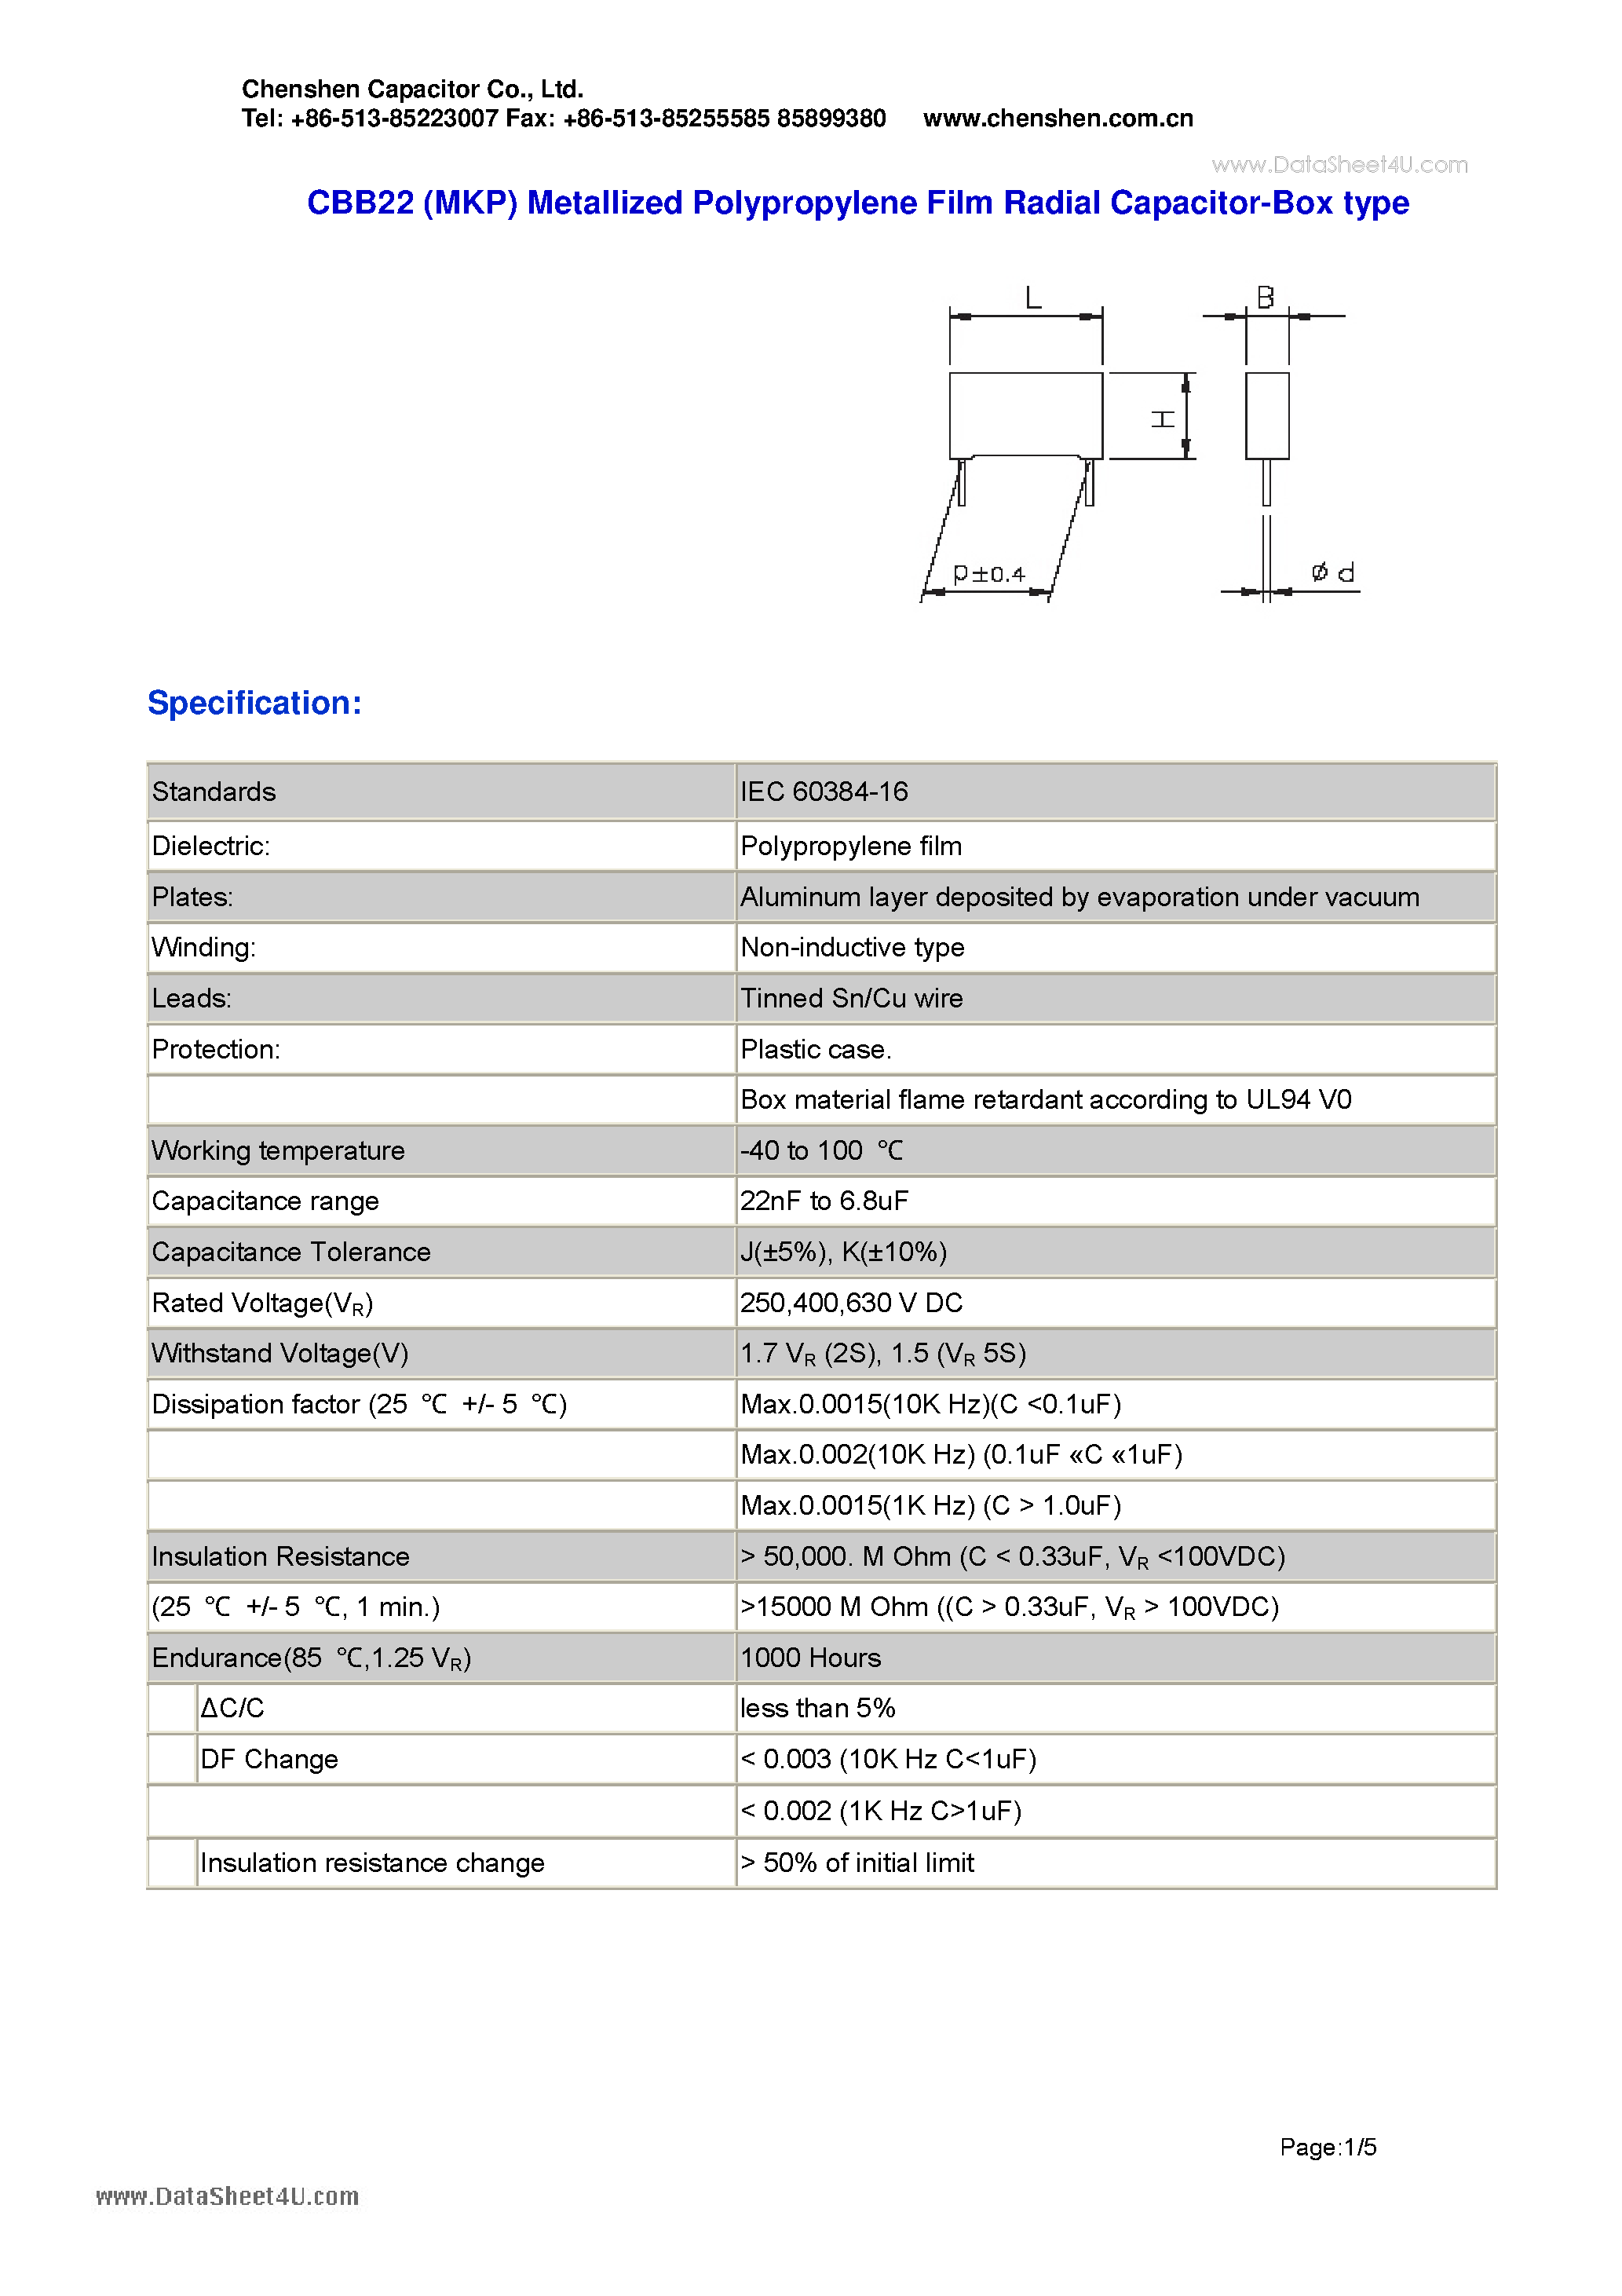 Datasheet CBB22 - Metallized Polypropylene Film Radial Capacitor page 1